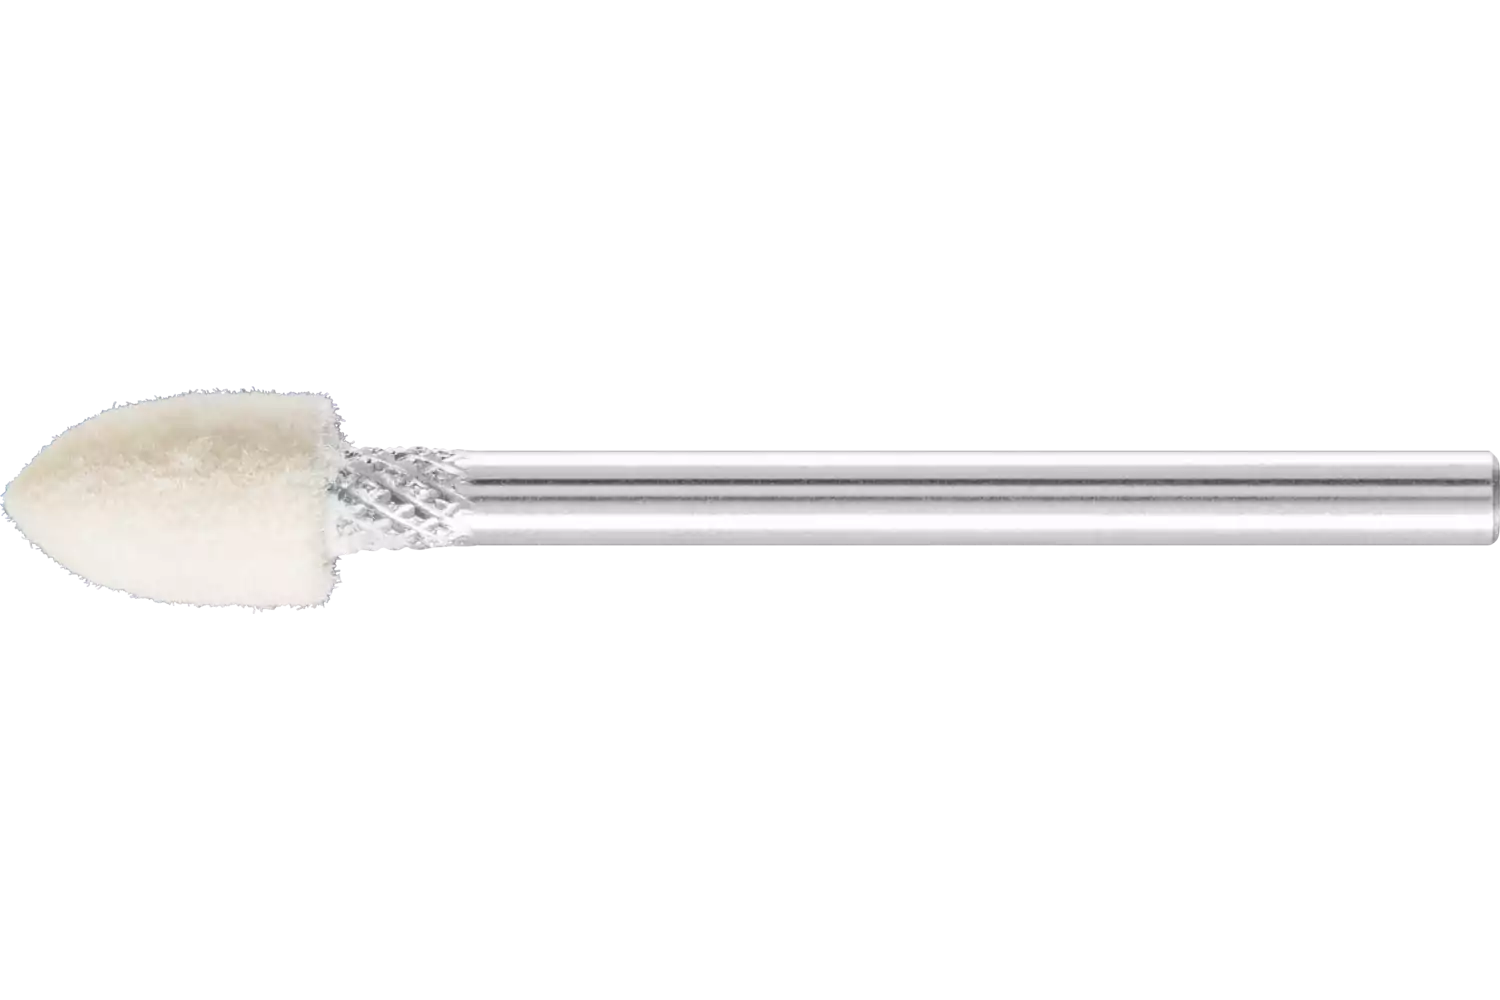 Feltri con gambo per lucidare duri forma a cono appuntito Ø 6x10 mm, gambo Ø 3 mm 1